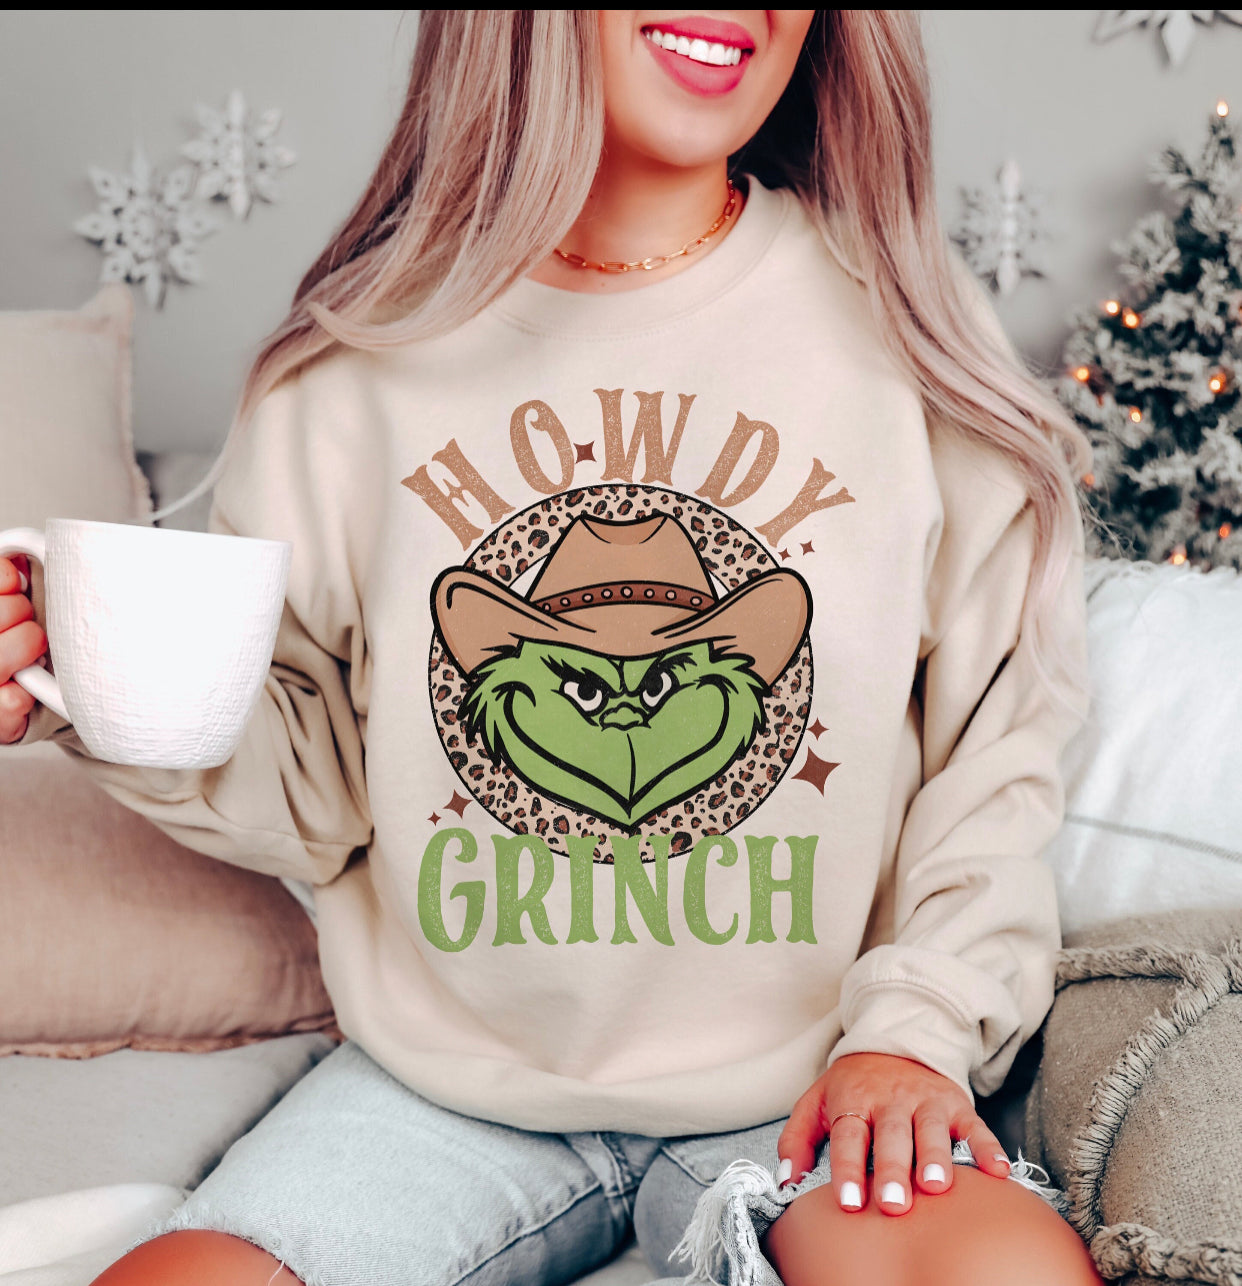 Howdy Grinch Sweatshirt